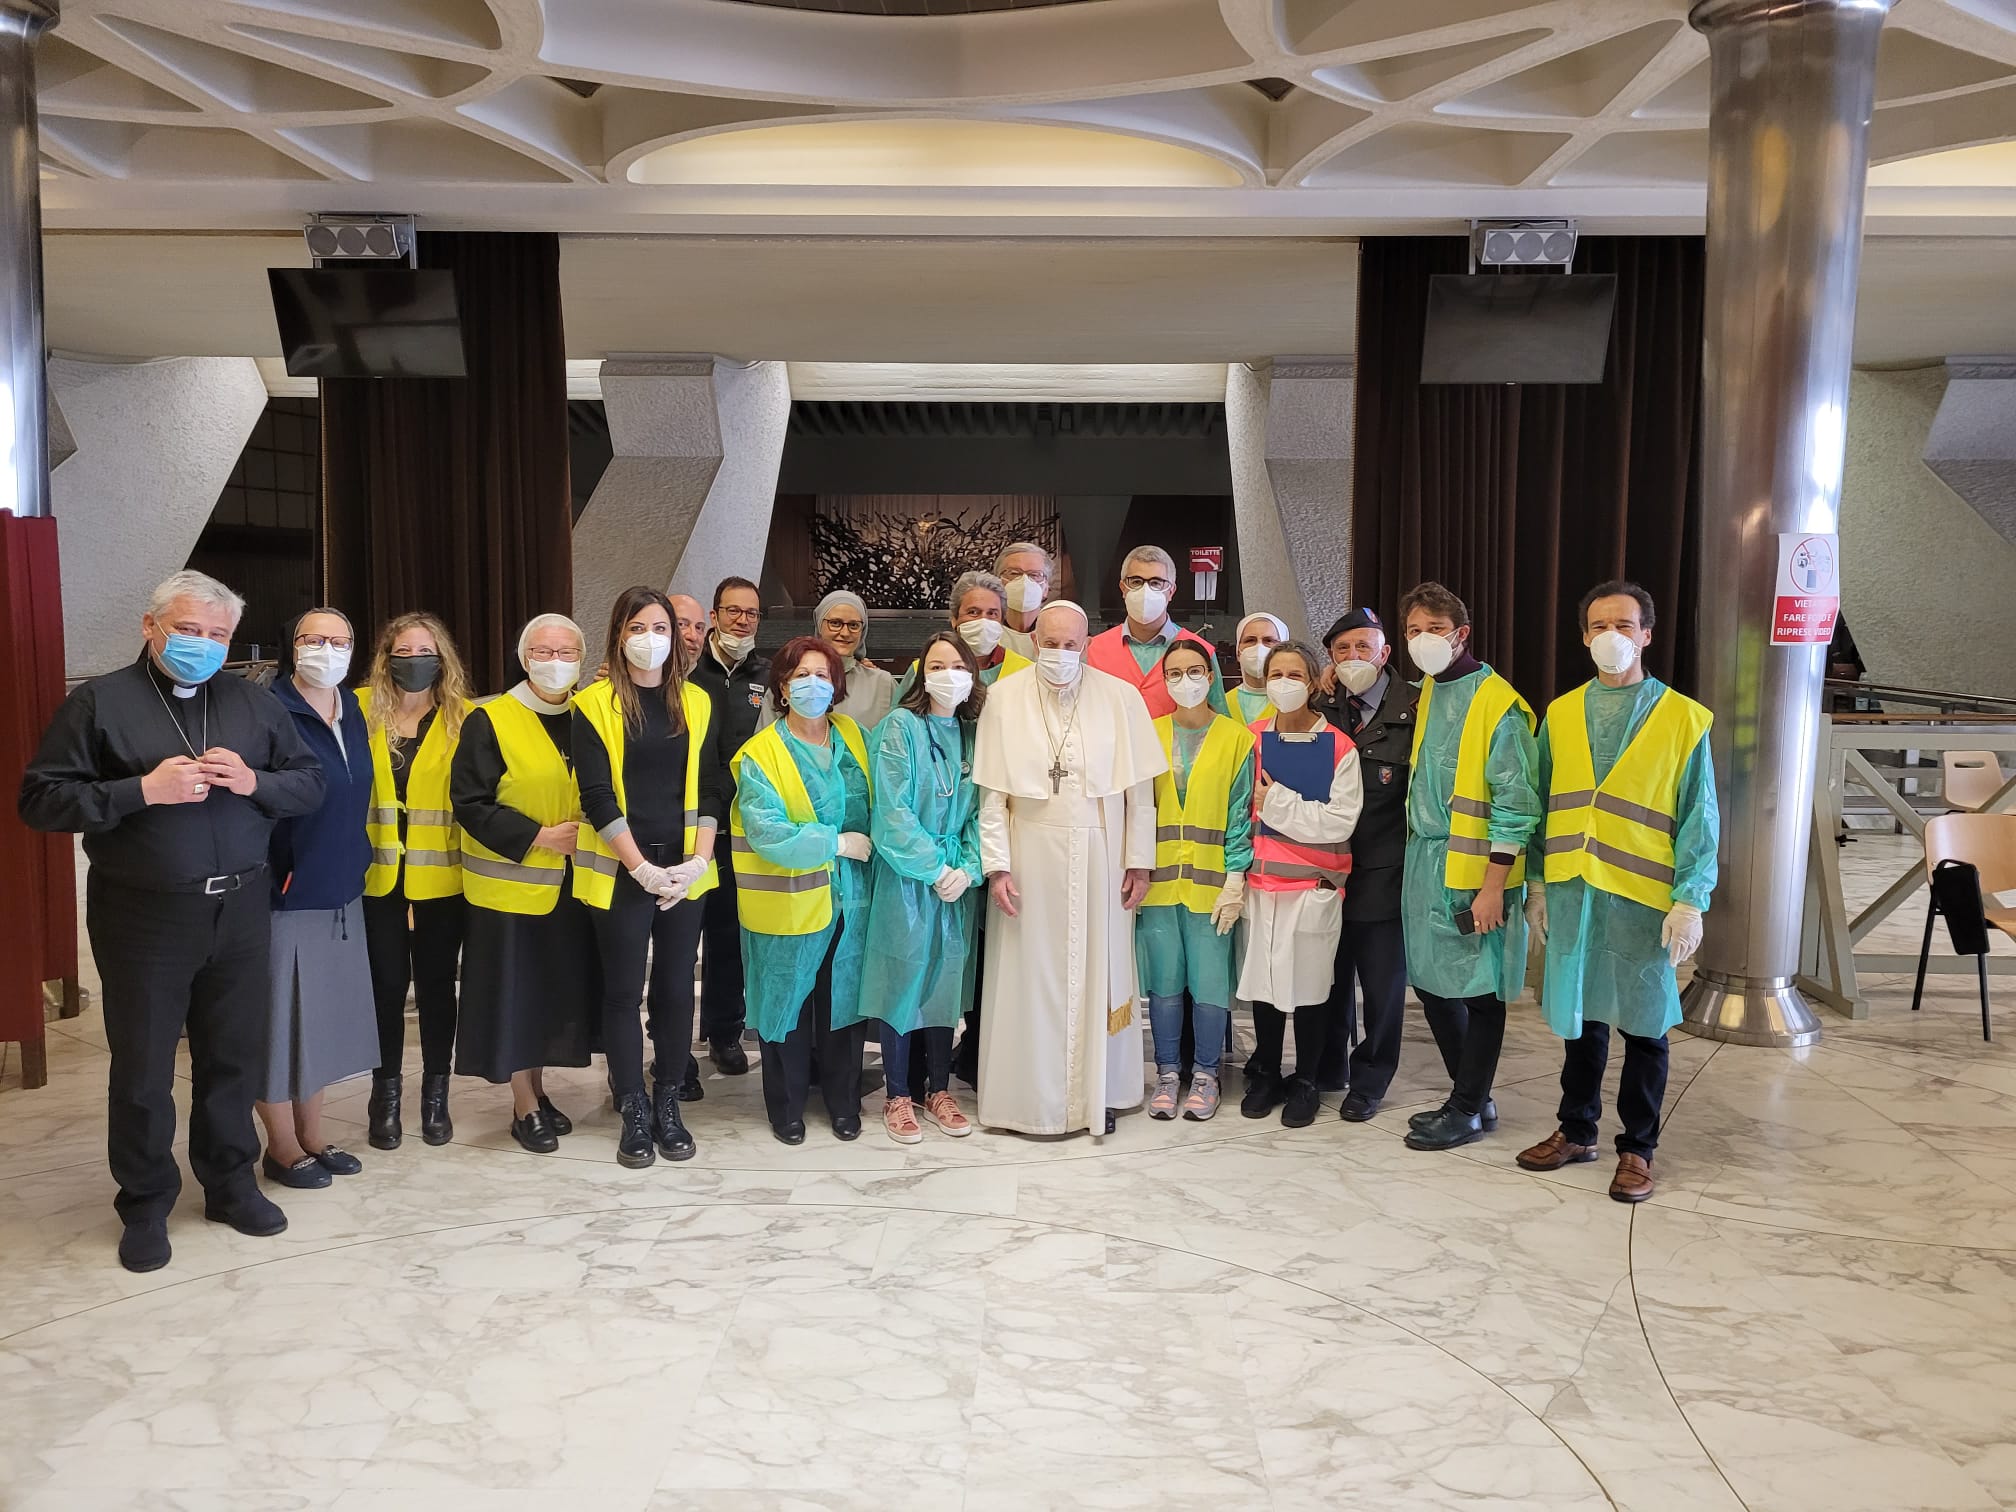 Visite du pape aux personnes démunies recevant le vaccin, 2 avril 2021© Vatican Media